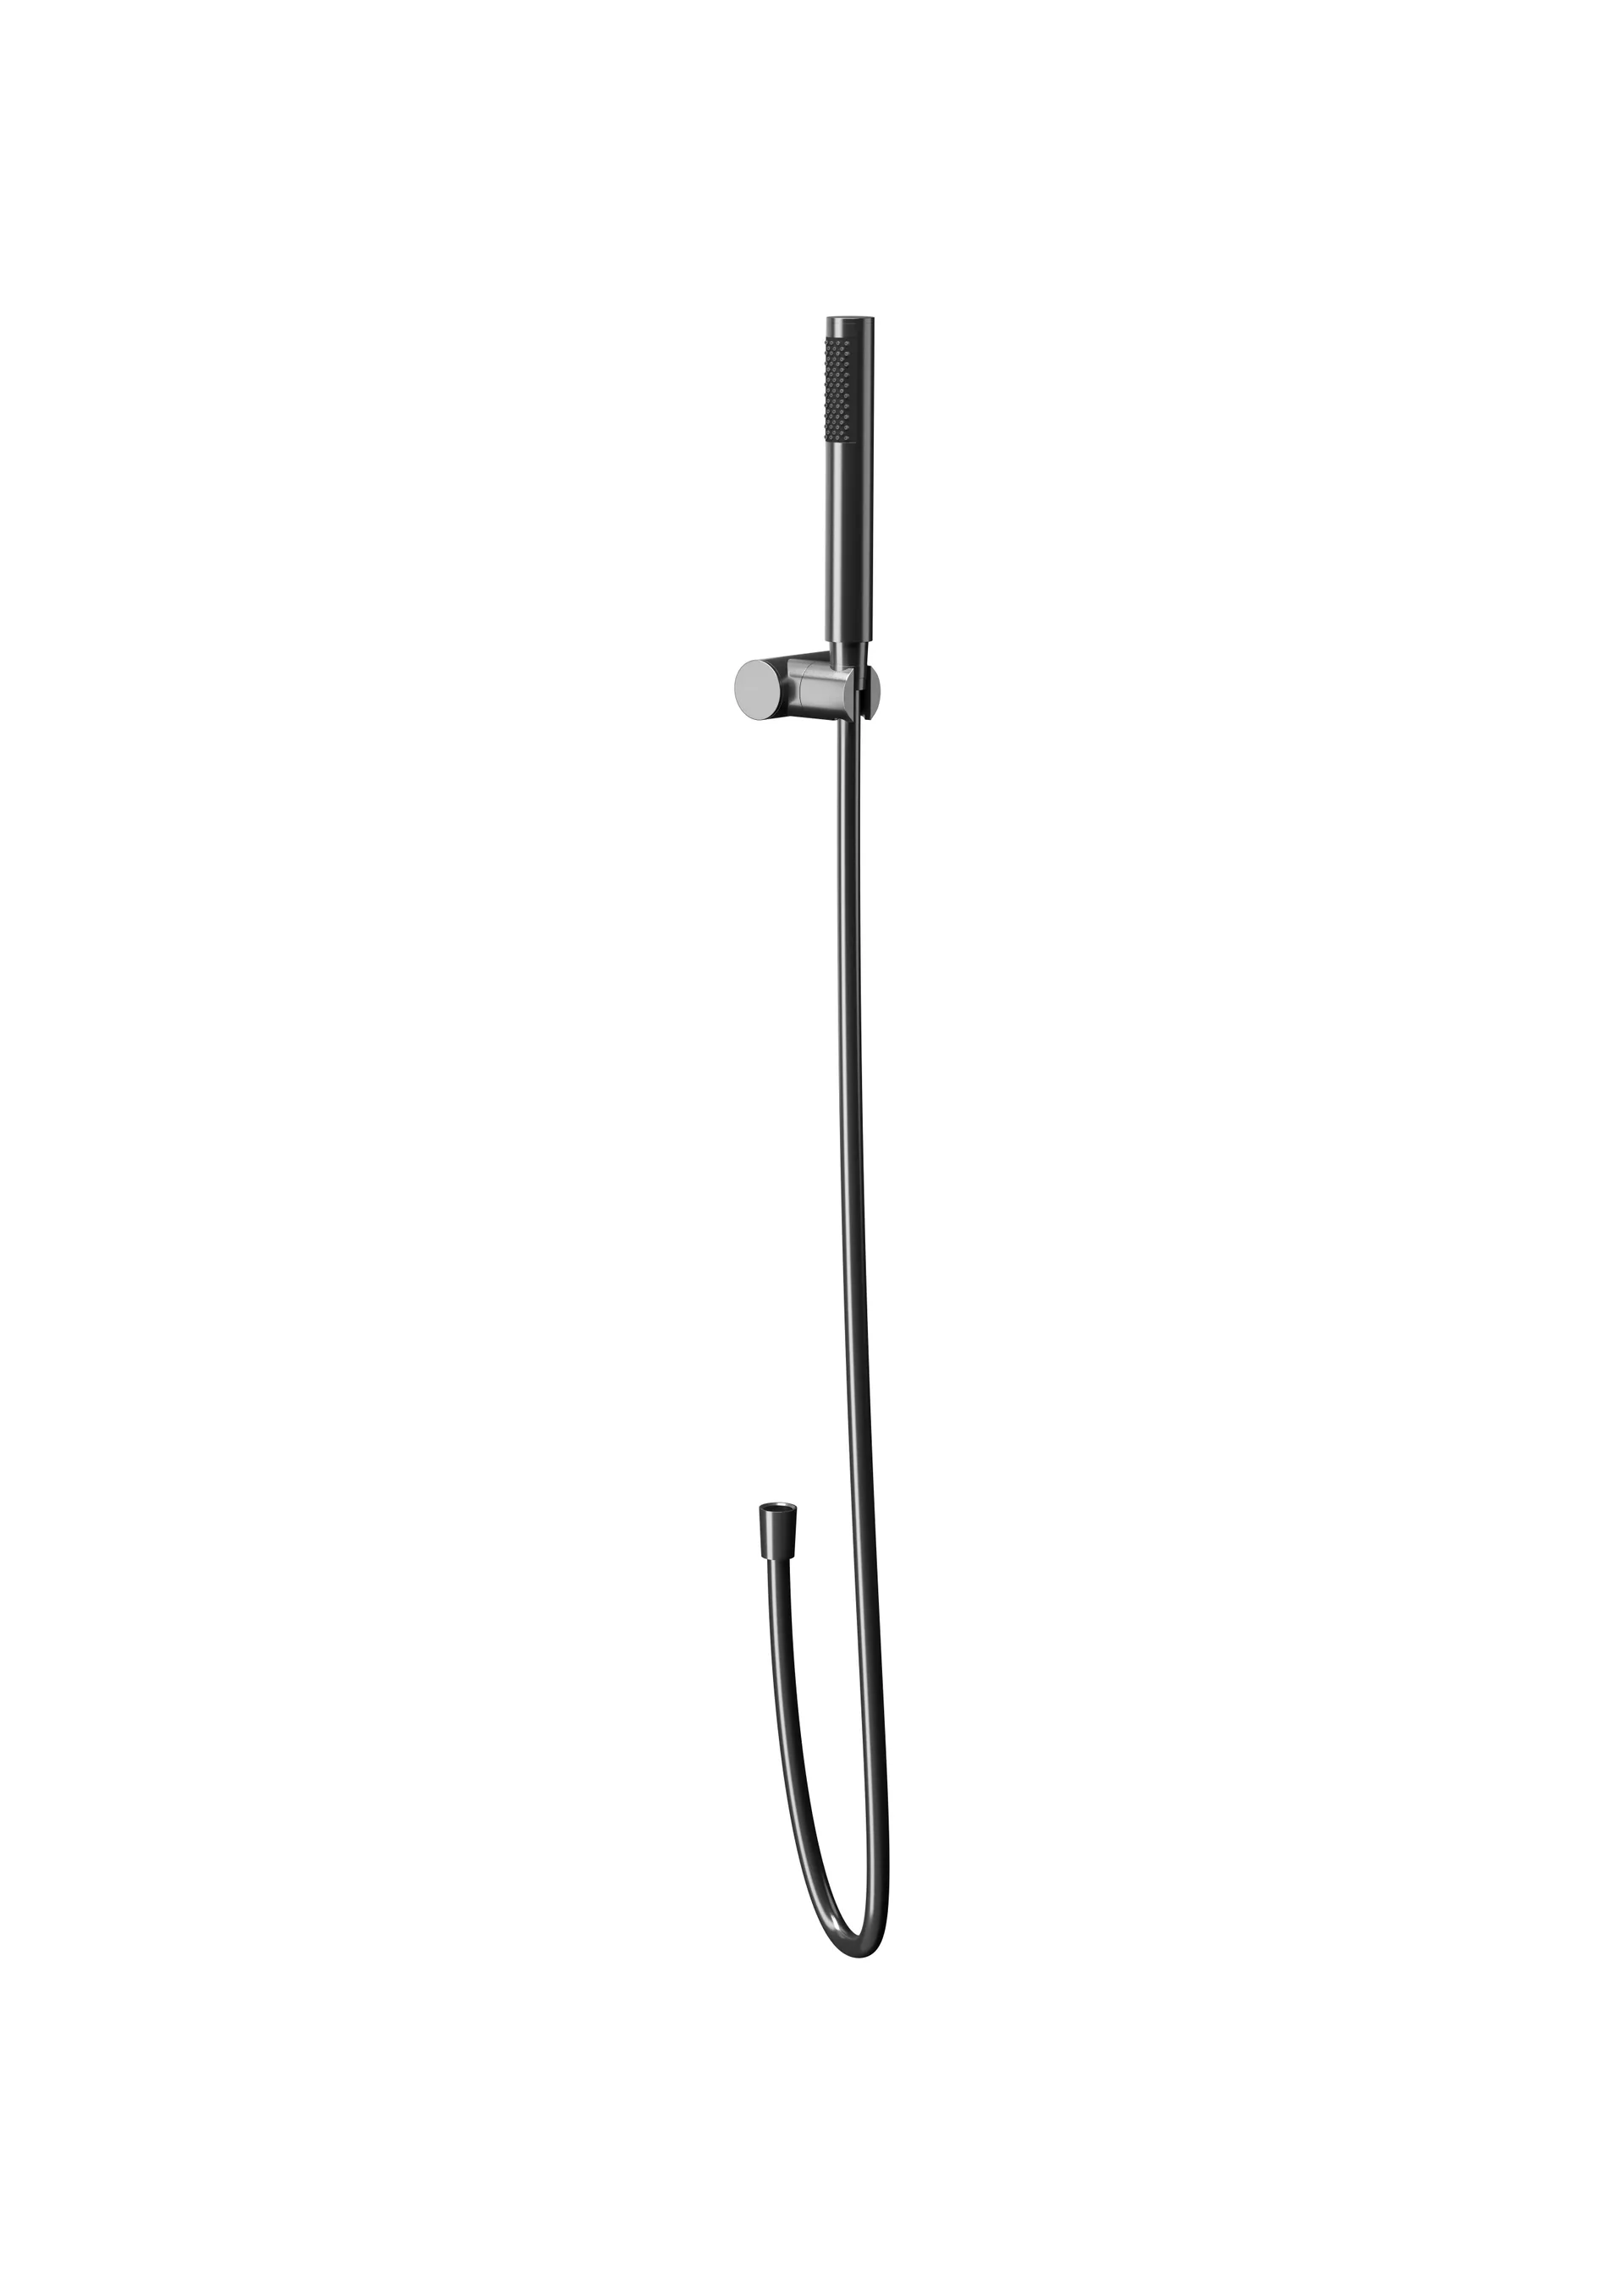 Zestaw prysznicowy punktowy Cersanit Zen antracyt połysk S951-618